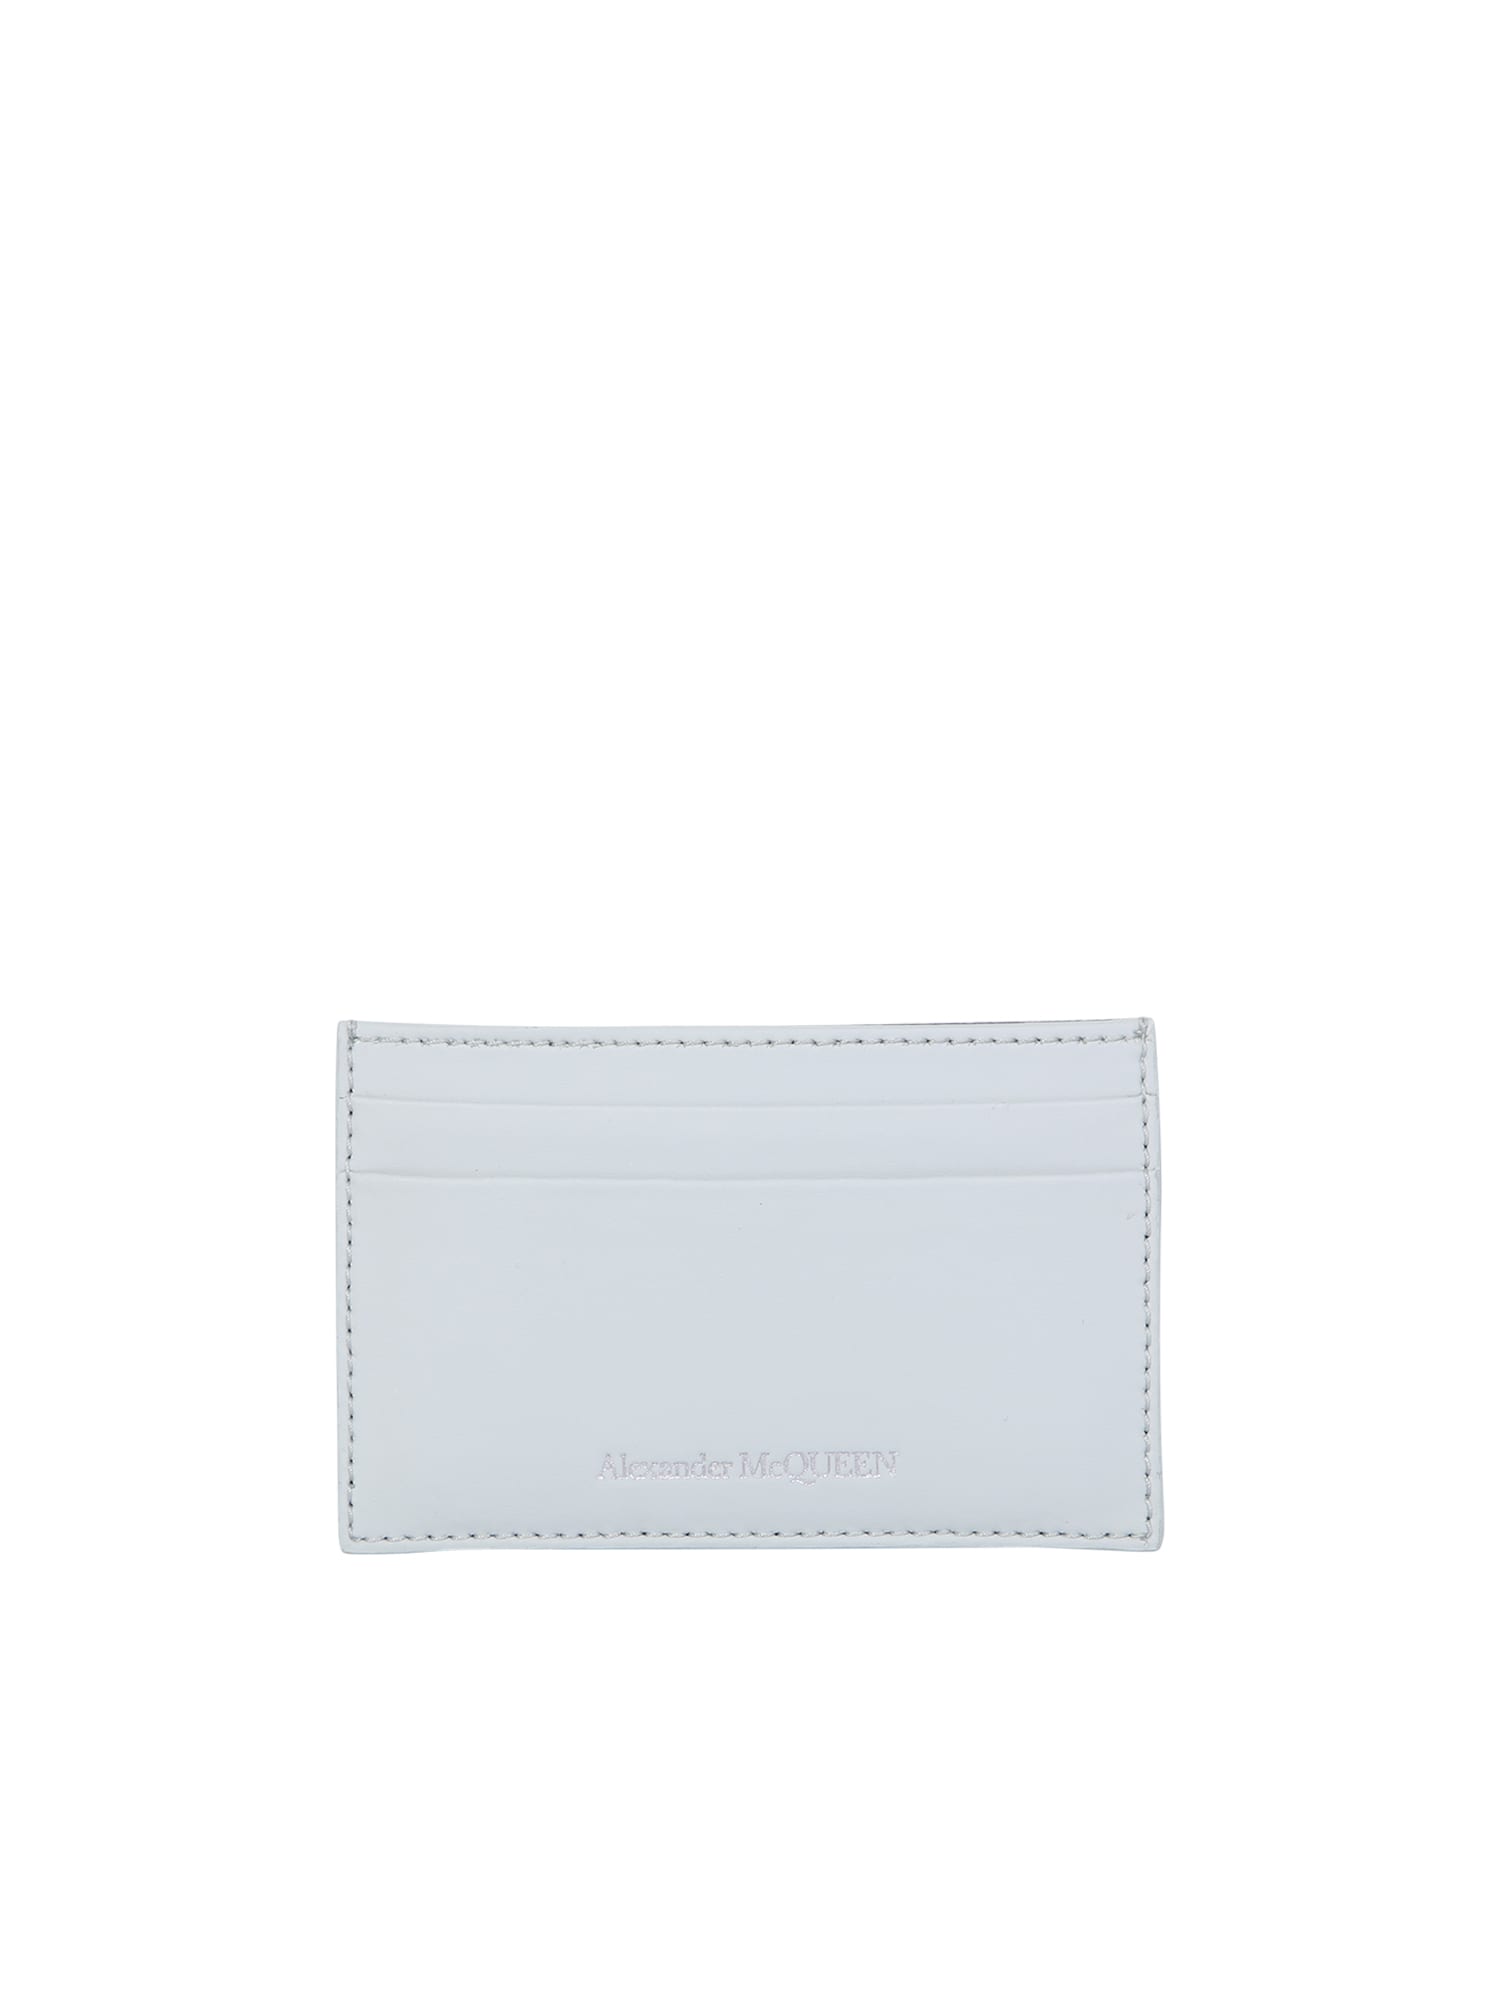 Alexander McQueen Minimal White Cardholder